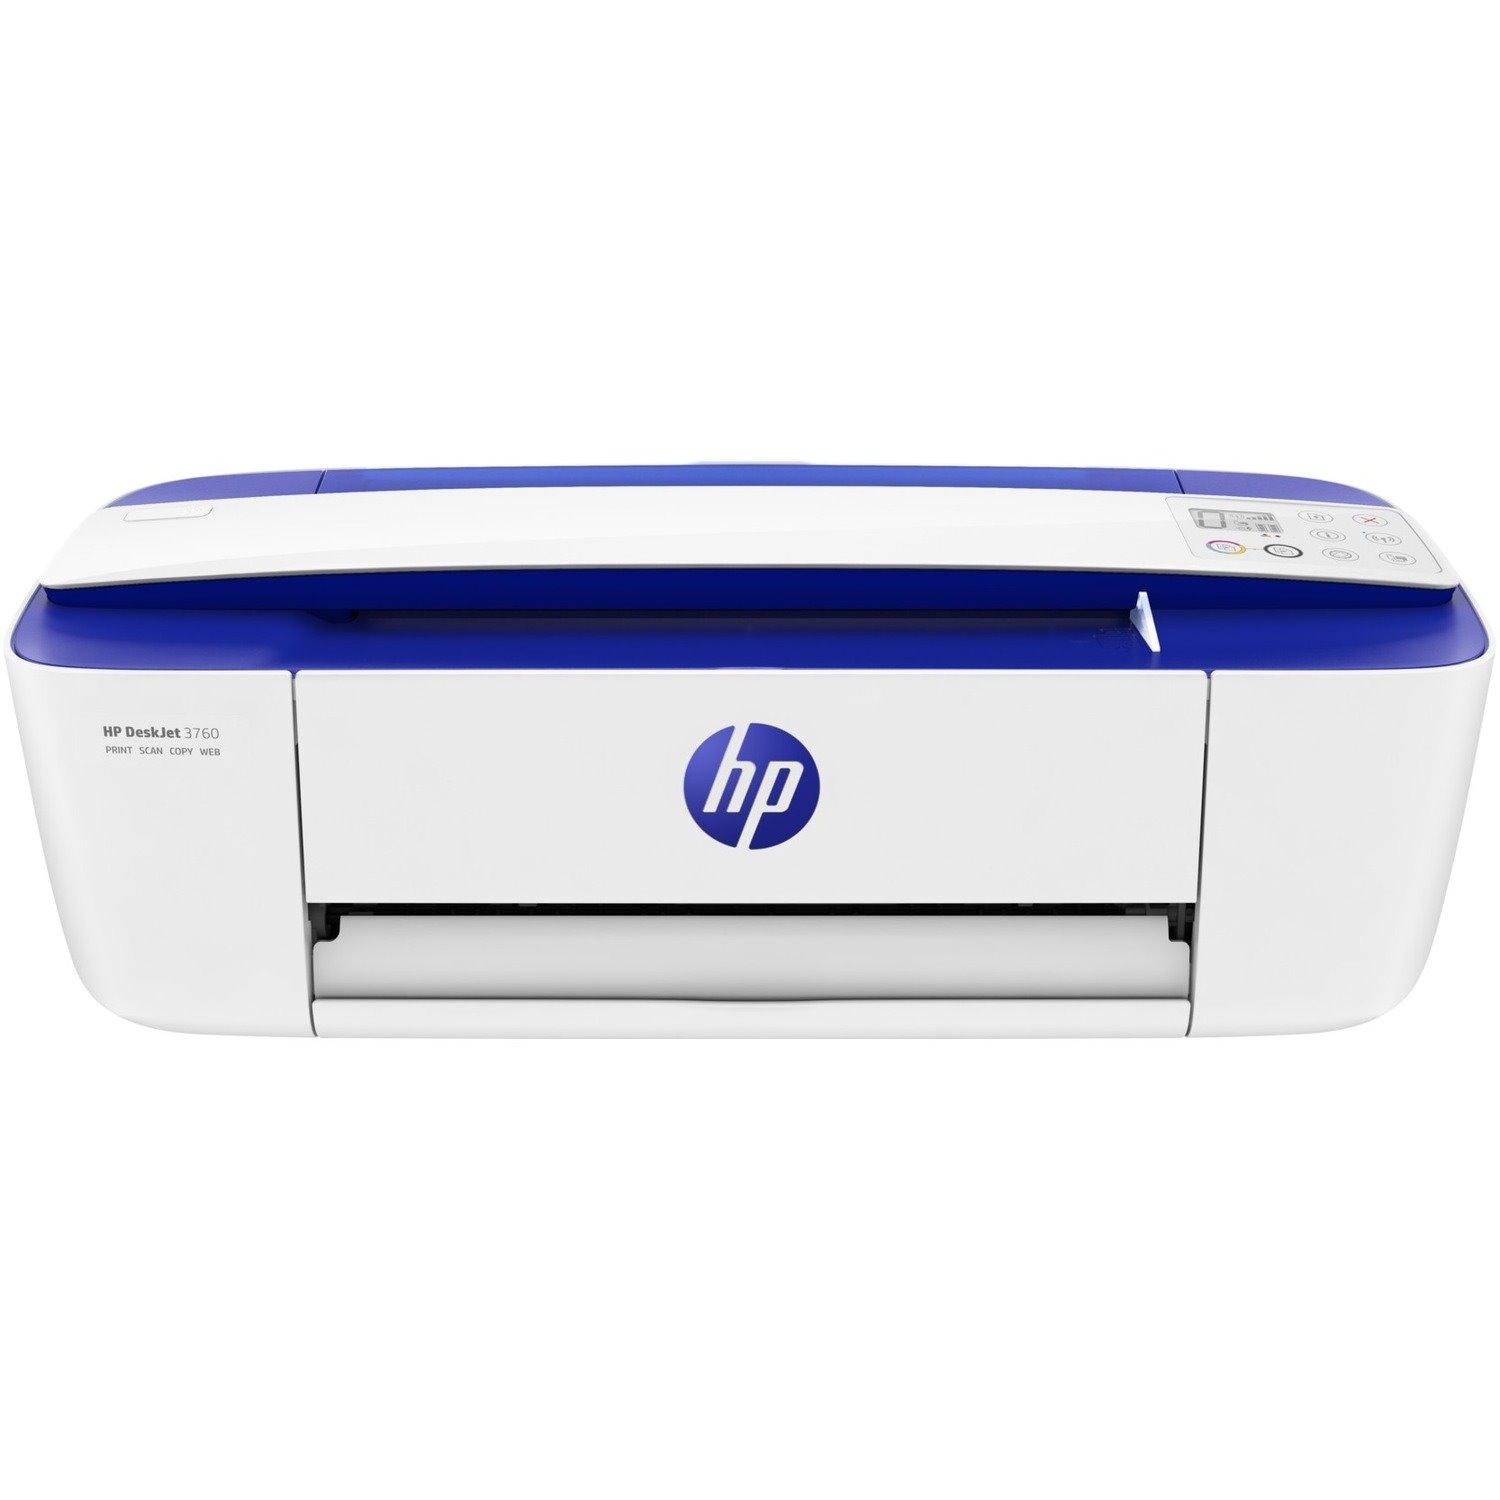 HP Deskjet 3760 Wireless Inkjet Multifunction Printer - Colour